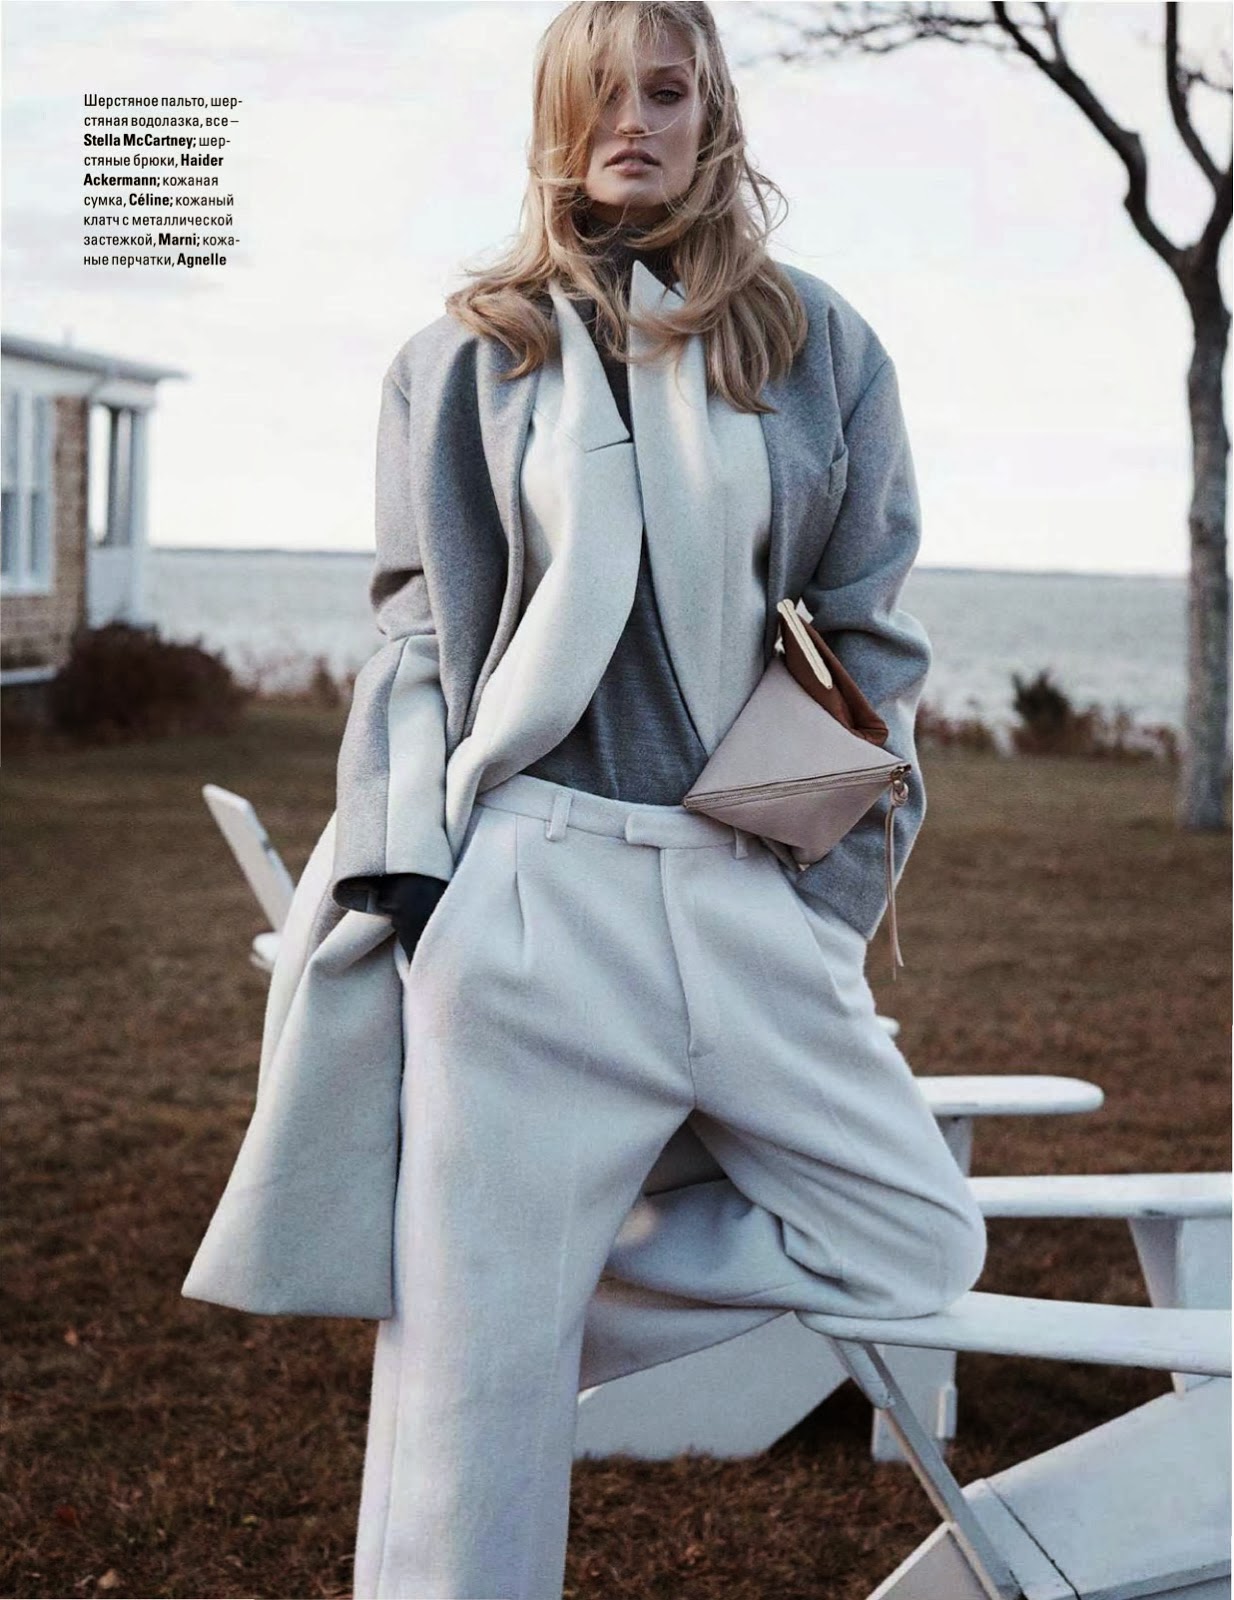 Magazine Photoshoot : Toni Garrn Photoshot For Benny Horne Vogue Magazine Ukraine January 2014 Issue 